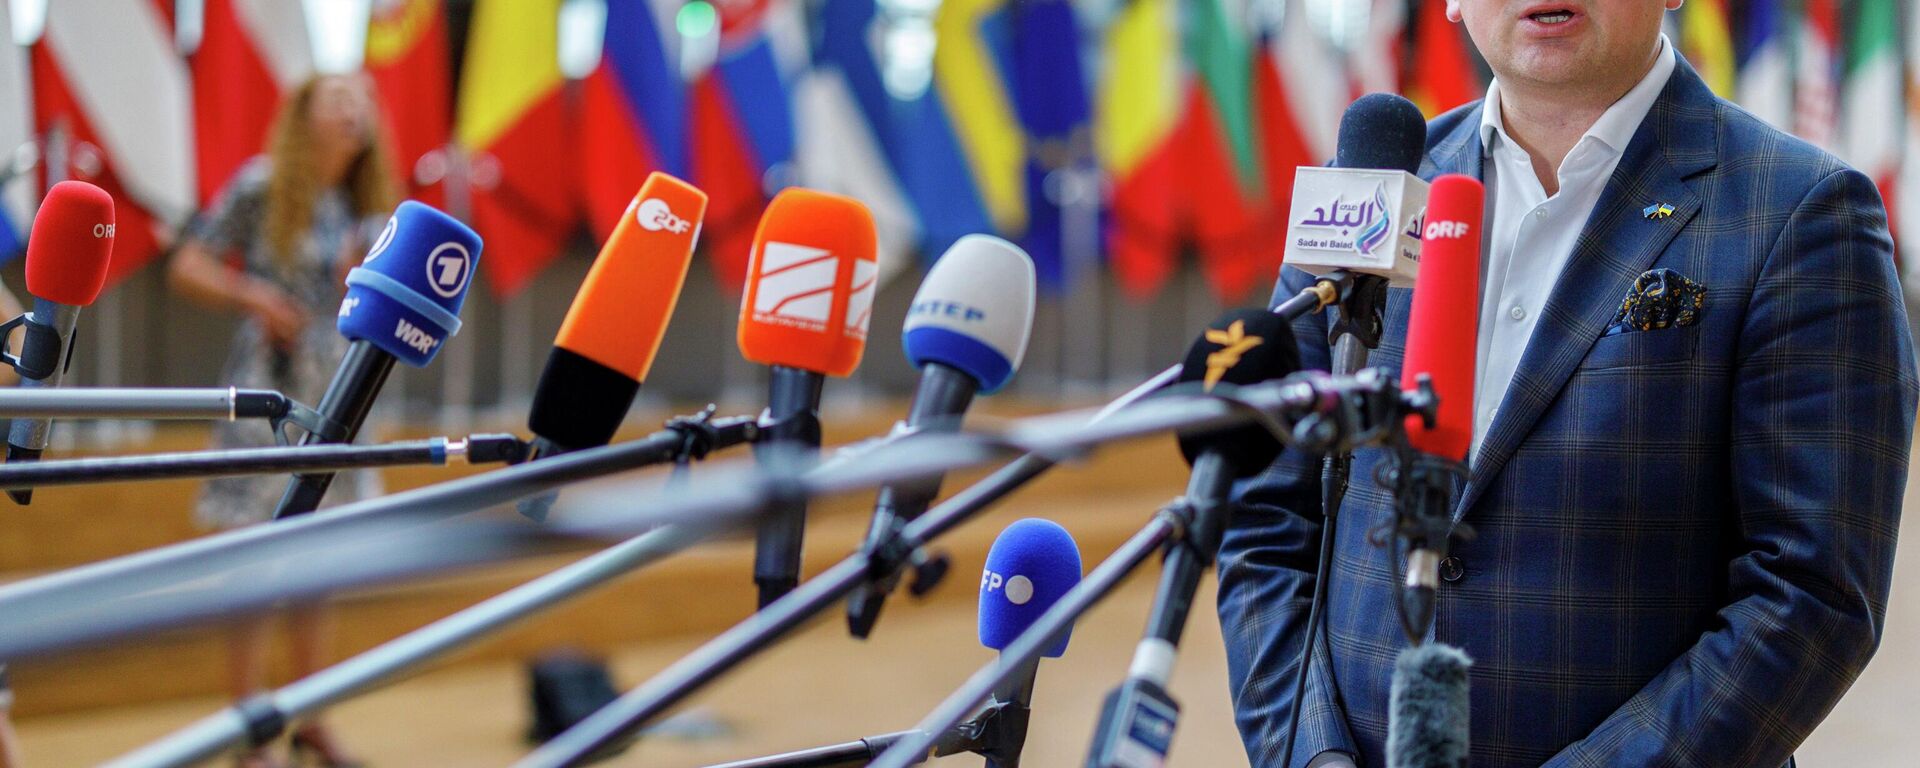 O ministro das Relações Exteriores da Ucrânia, Dmytro Kuleba, chega antes de falar com a imprensa após uma reunião de ministros das Relações Exteriores da UE no prédio do Conselho Europeu em Bruxelas, segunda-feira, 16 de maio de 2022 - Sputnik Brasil, 1920, 12.11.2022